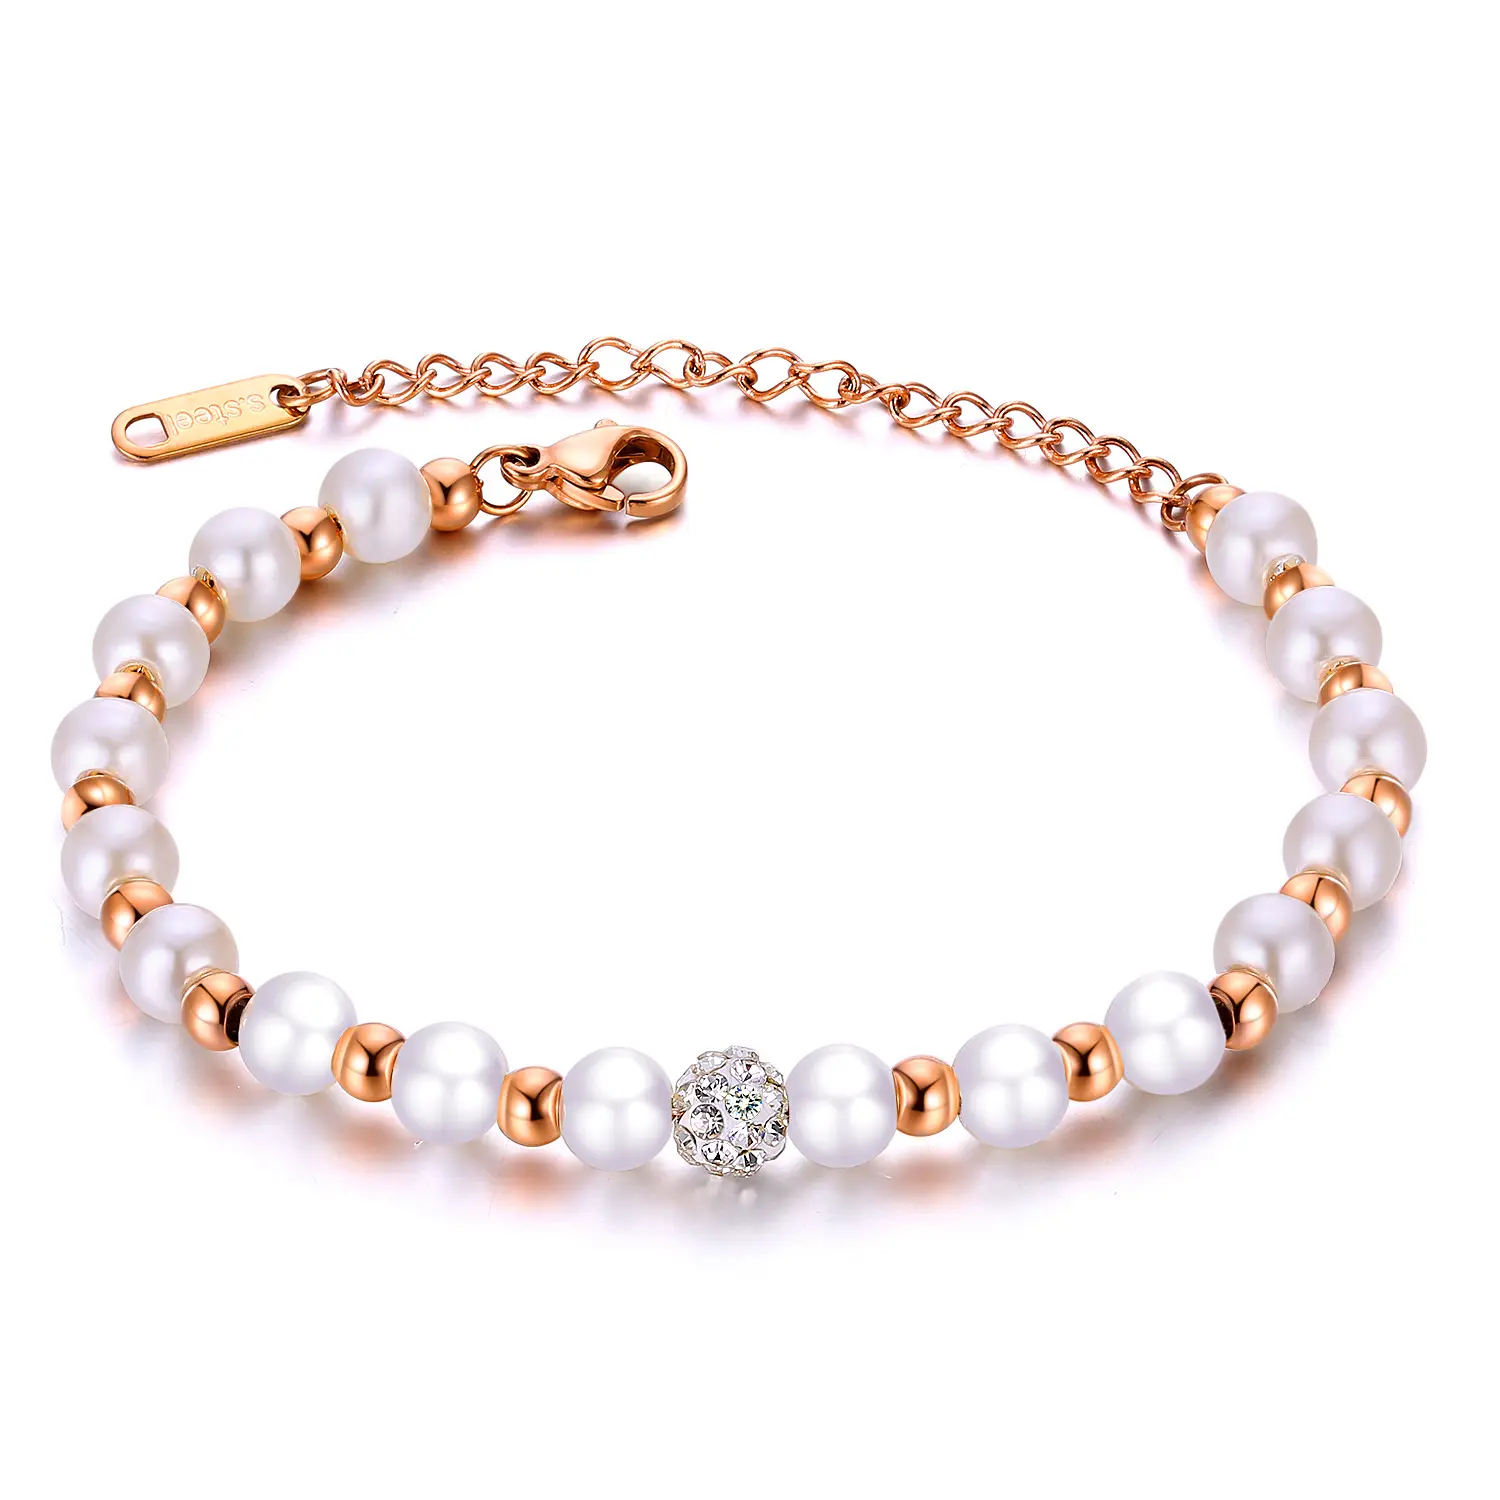 Gioielli di moda all'ingrosso stile oceano in acciaio inox gioielli di perle pavé sfera di cristallo con perline braccialetto di fascino per le donne regali